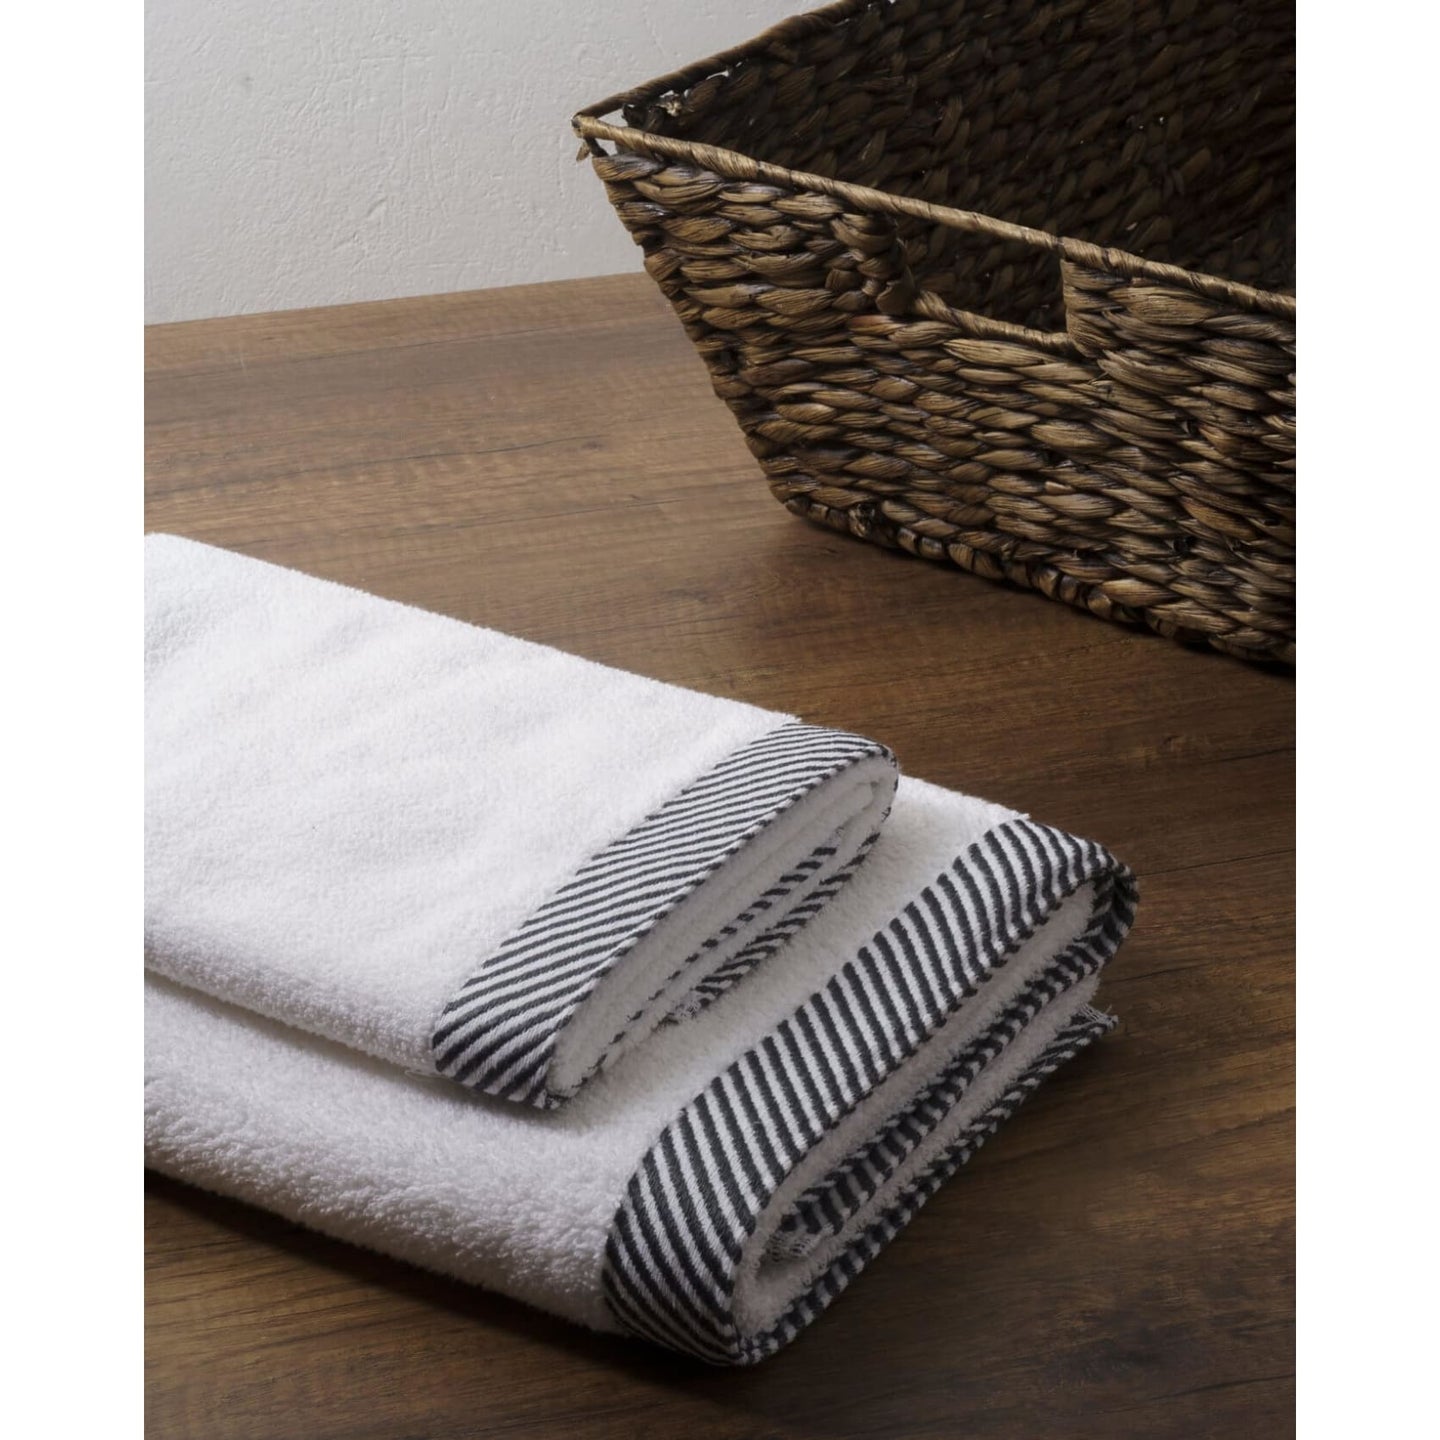 Kit toalla, toalla de cuerpo, toalla de manos, baño, 100% algodón, blanco